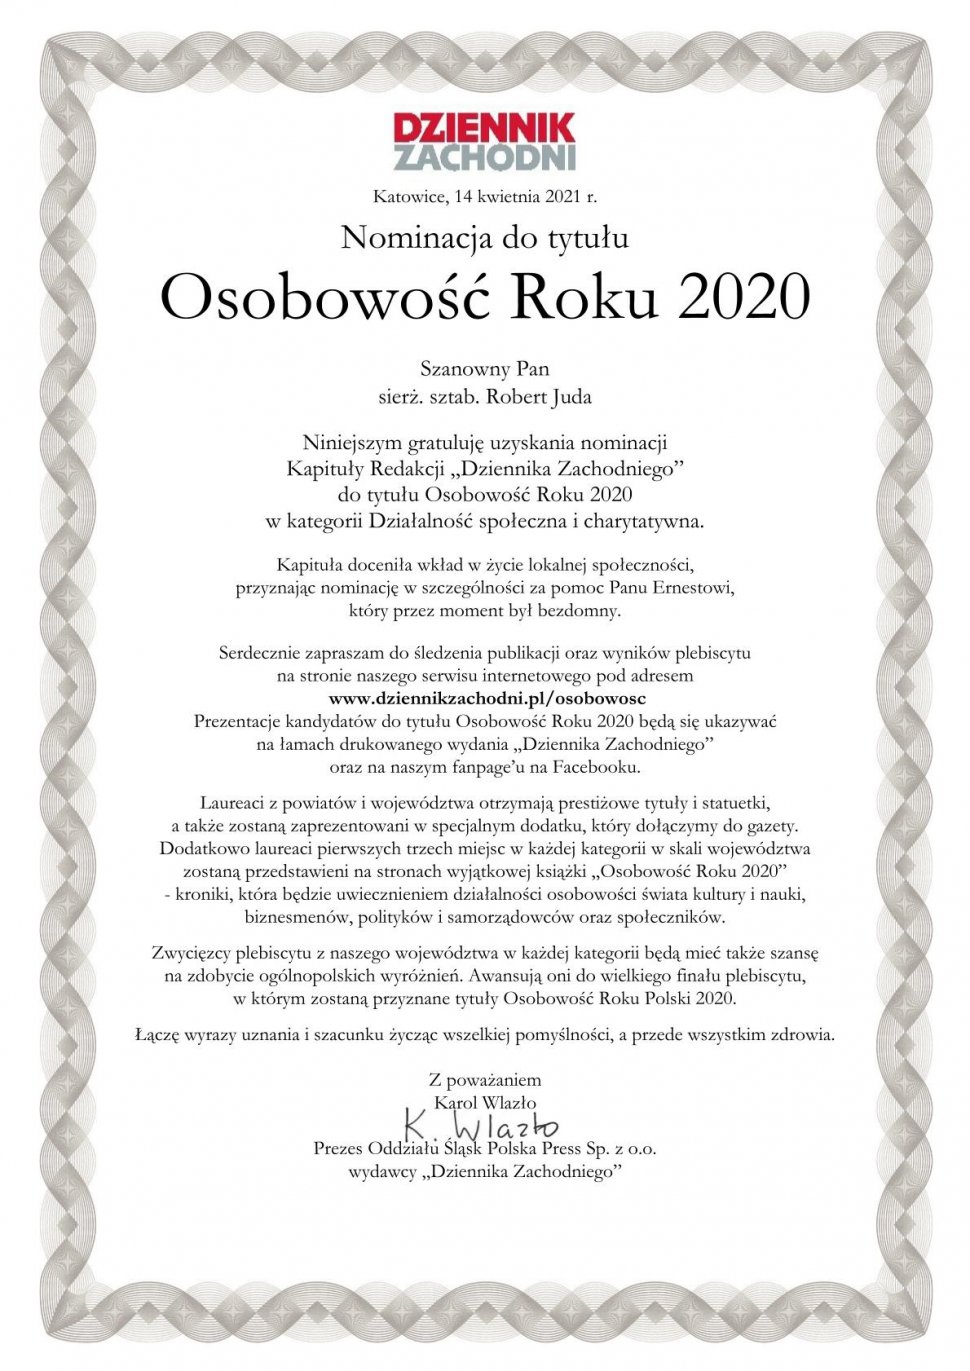 Zdjęcie przedstawia nominację do tytułu Osobowości Roku 2020